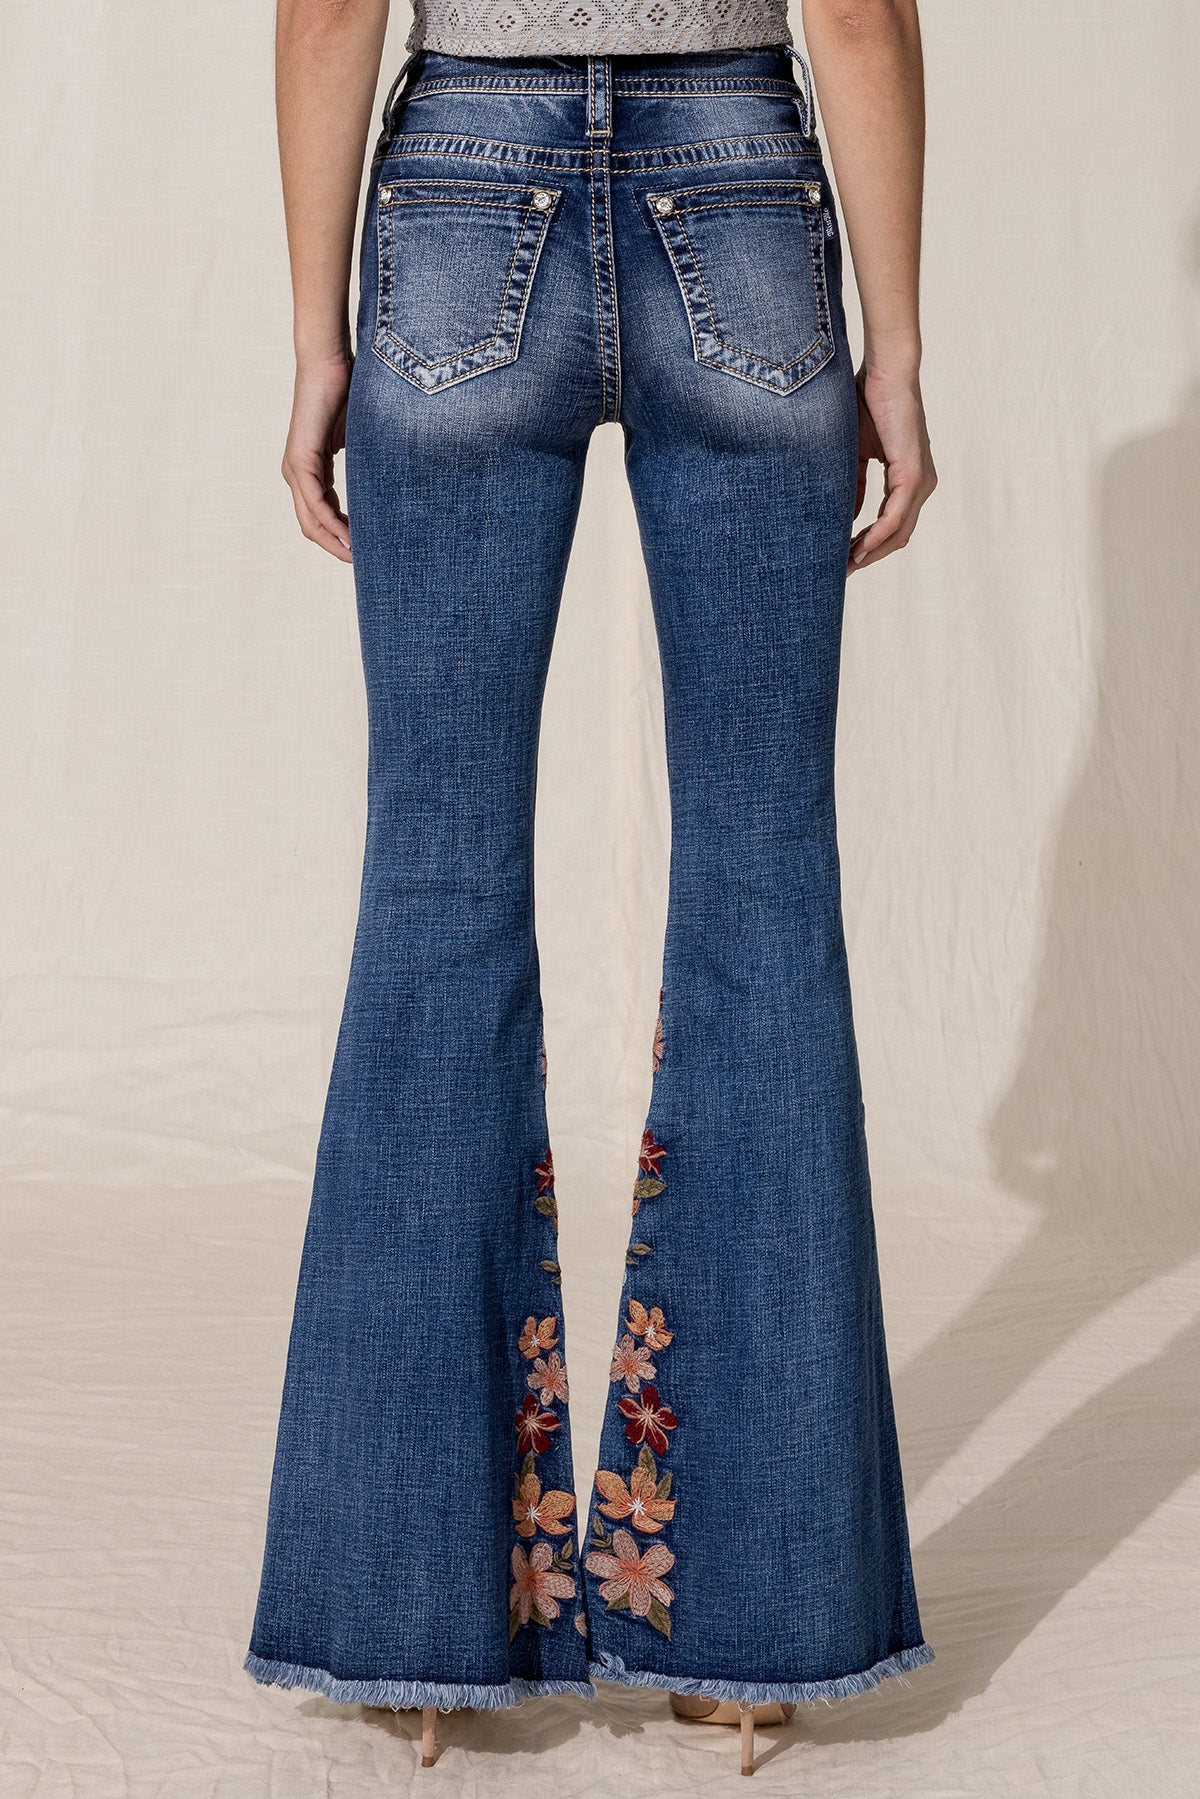 Hippie Flowers Bellbottom Jeans Size 28, Brand